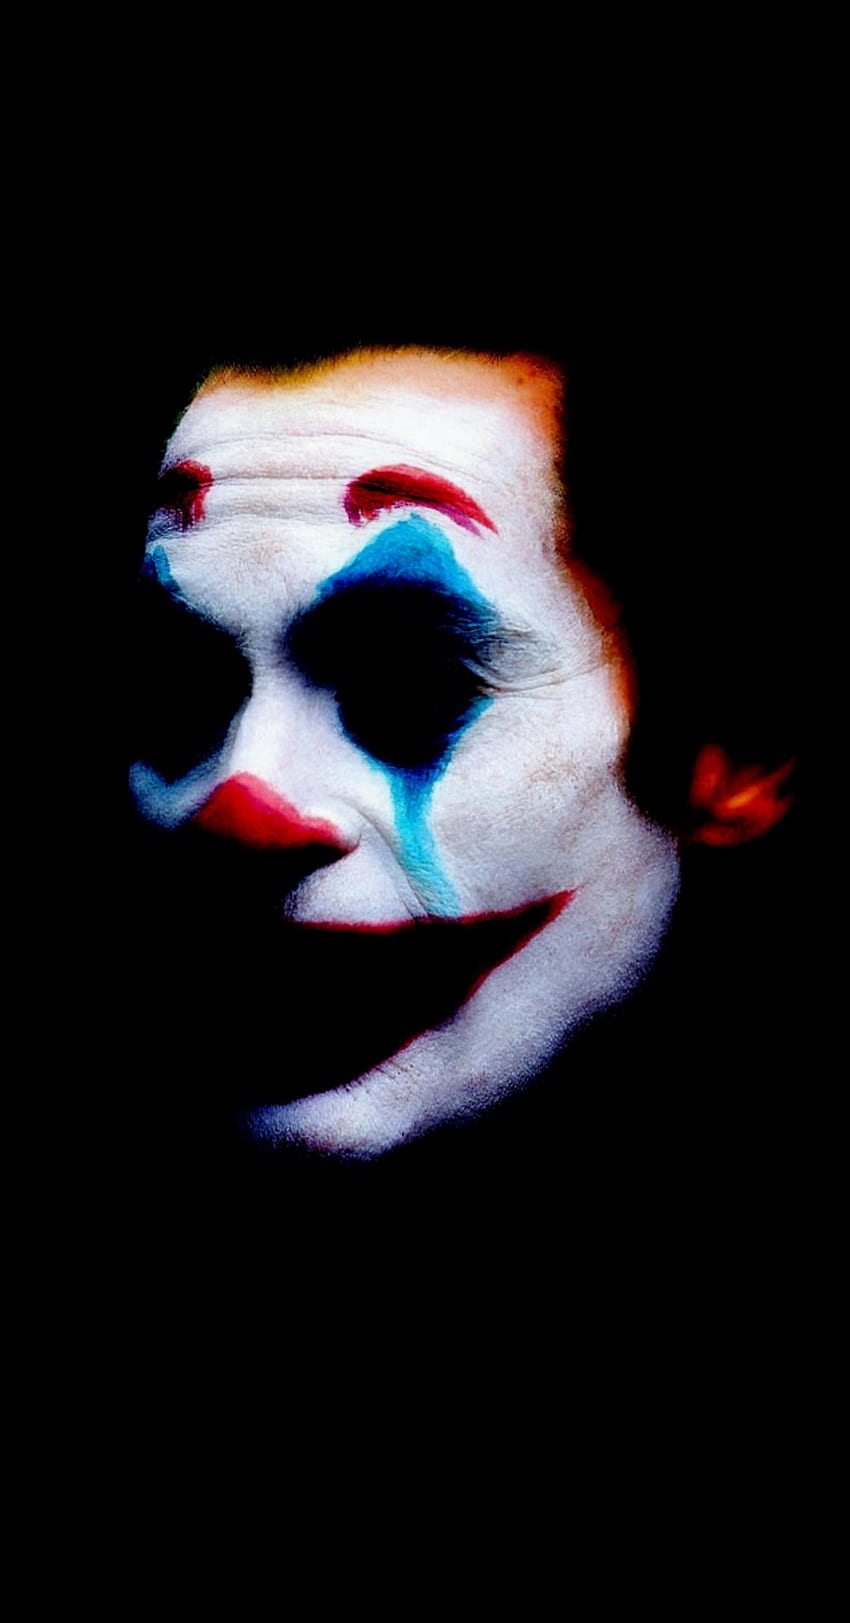 The Joker 2019 [1440×2750] : Latar belakang AMOLED wallpaper ponsel HD